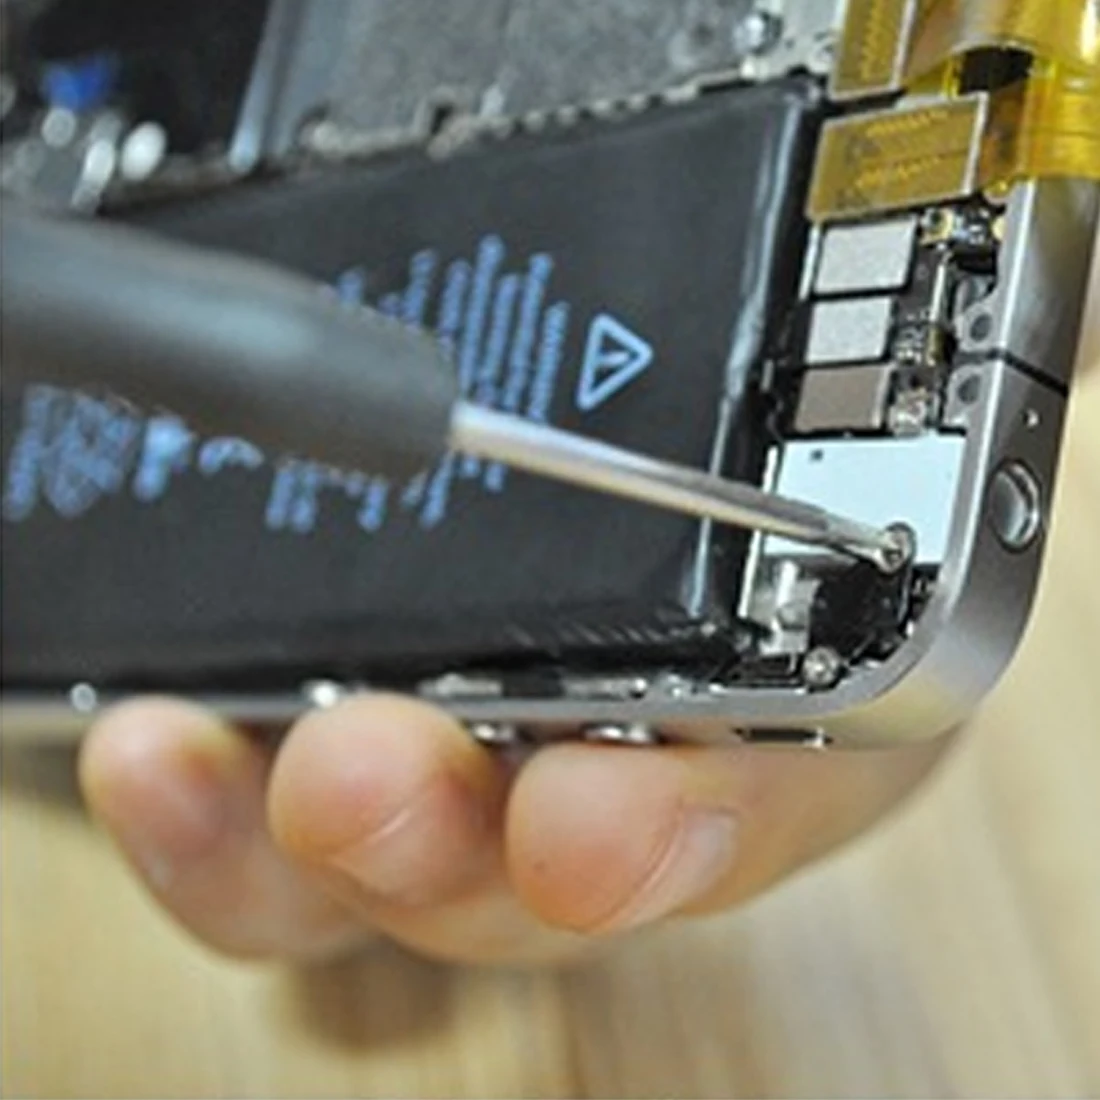 11 в 1 открывающийся инструмент для ремонта мобильных телефонов Набор отверток Набор для Iphone samsung аксессуар пряди Herramientas